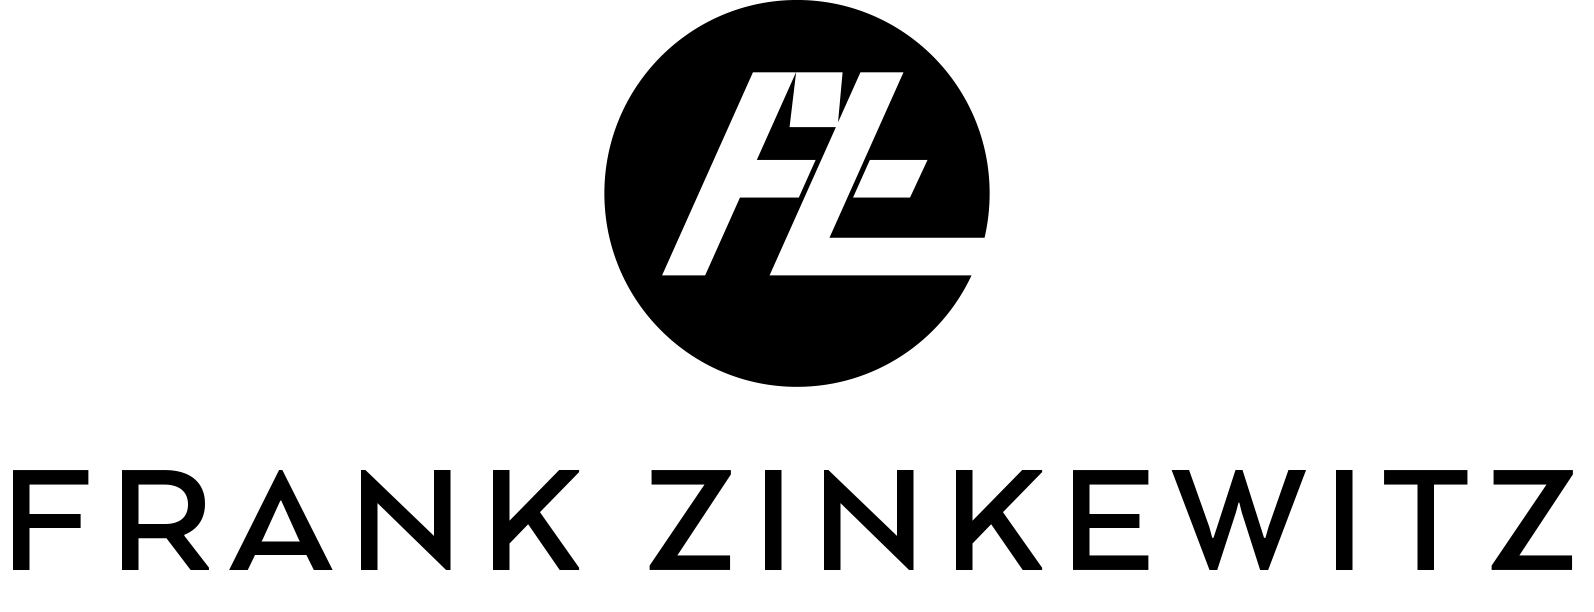 (c) Frank-zinkewitz.de